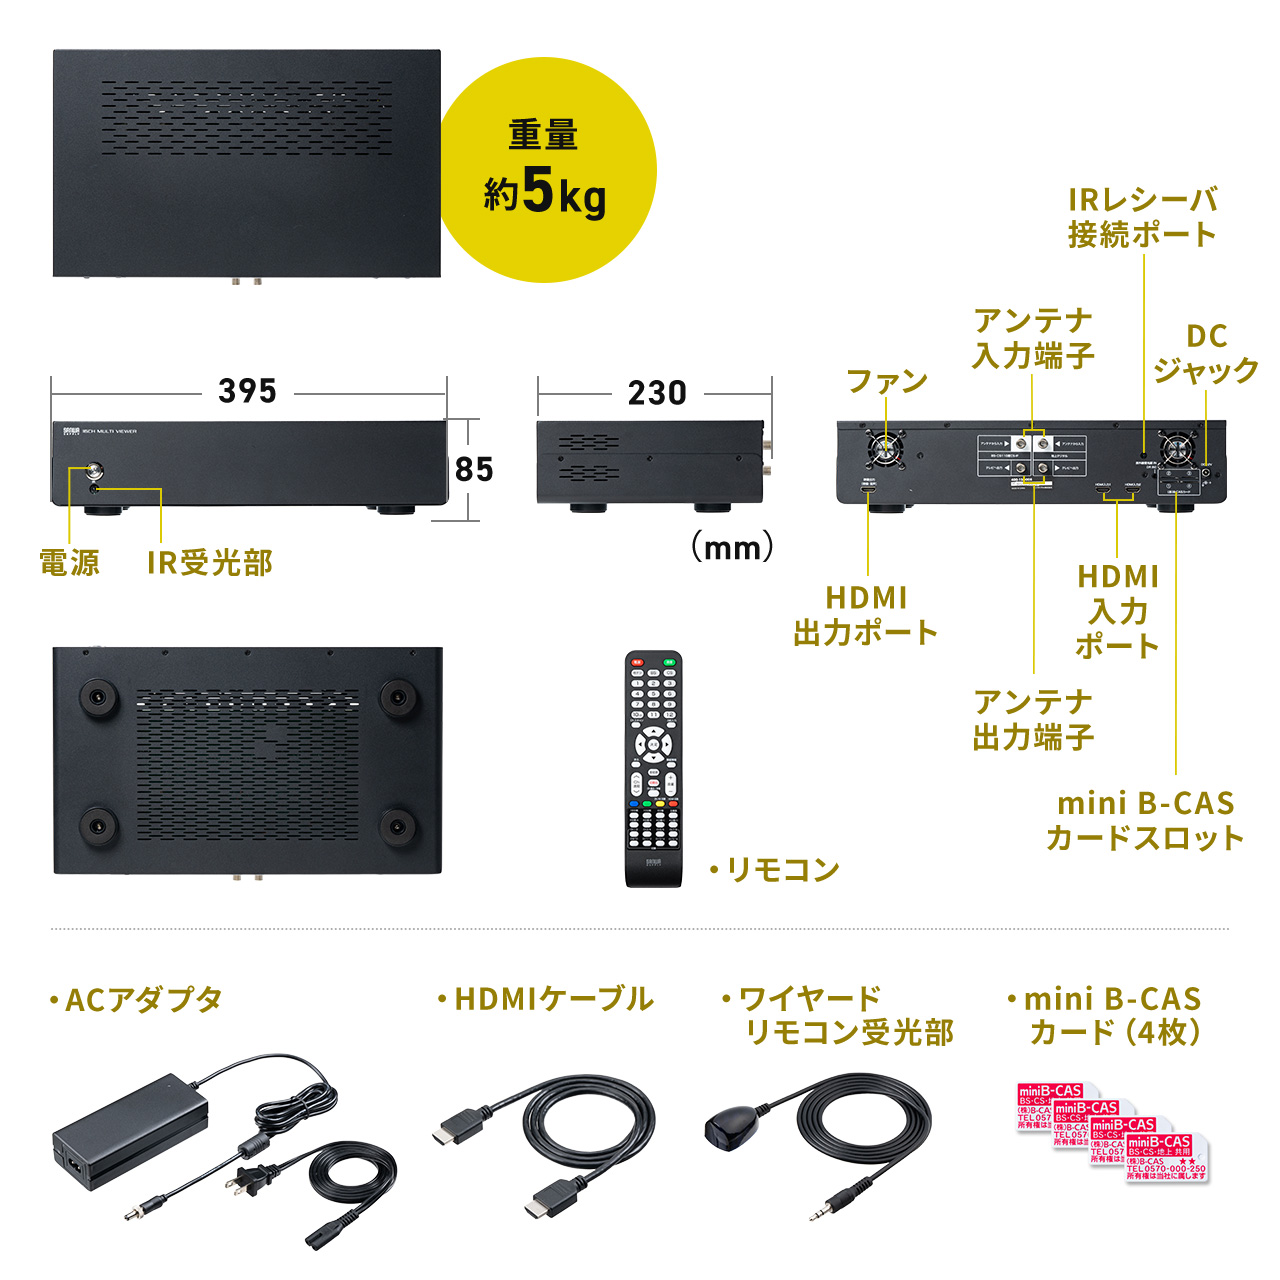 地デジチューナー 16番組同時視聴 16分割 10分割 8分割 4分割 全画面 地デジ放送 BS/CS放送 STB（CATV） HDMI入力×2ポート 400-1SG008